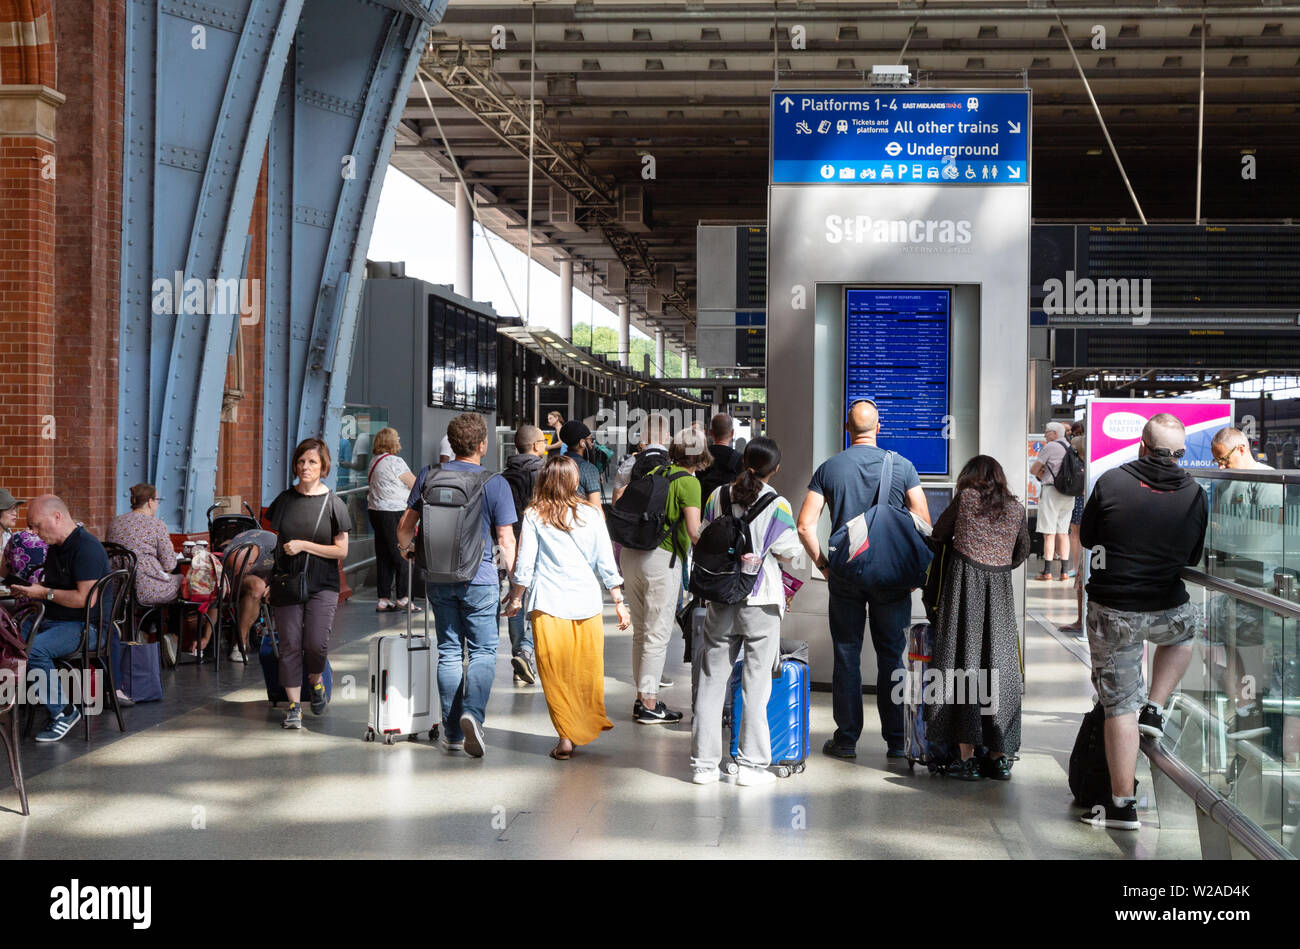 St. Pancras London UK; Fahrgäste bei der Abfahrt des Zuges auf der Plattform suchen, Bahnhof St. Pancras International London UK Stockfoto